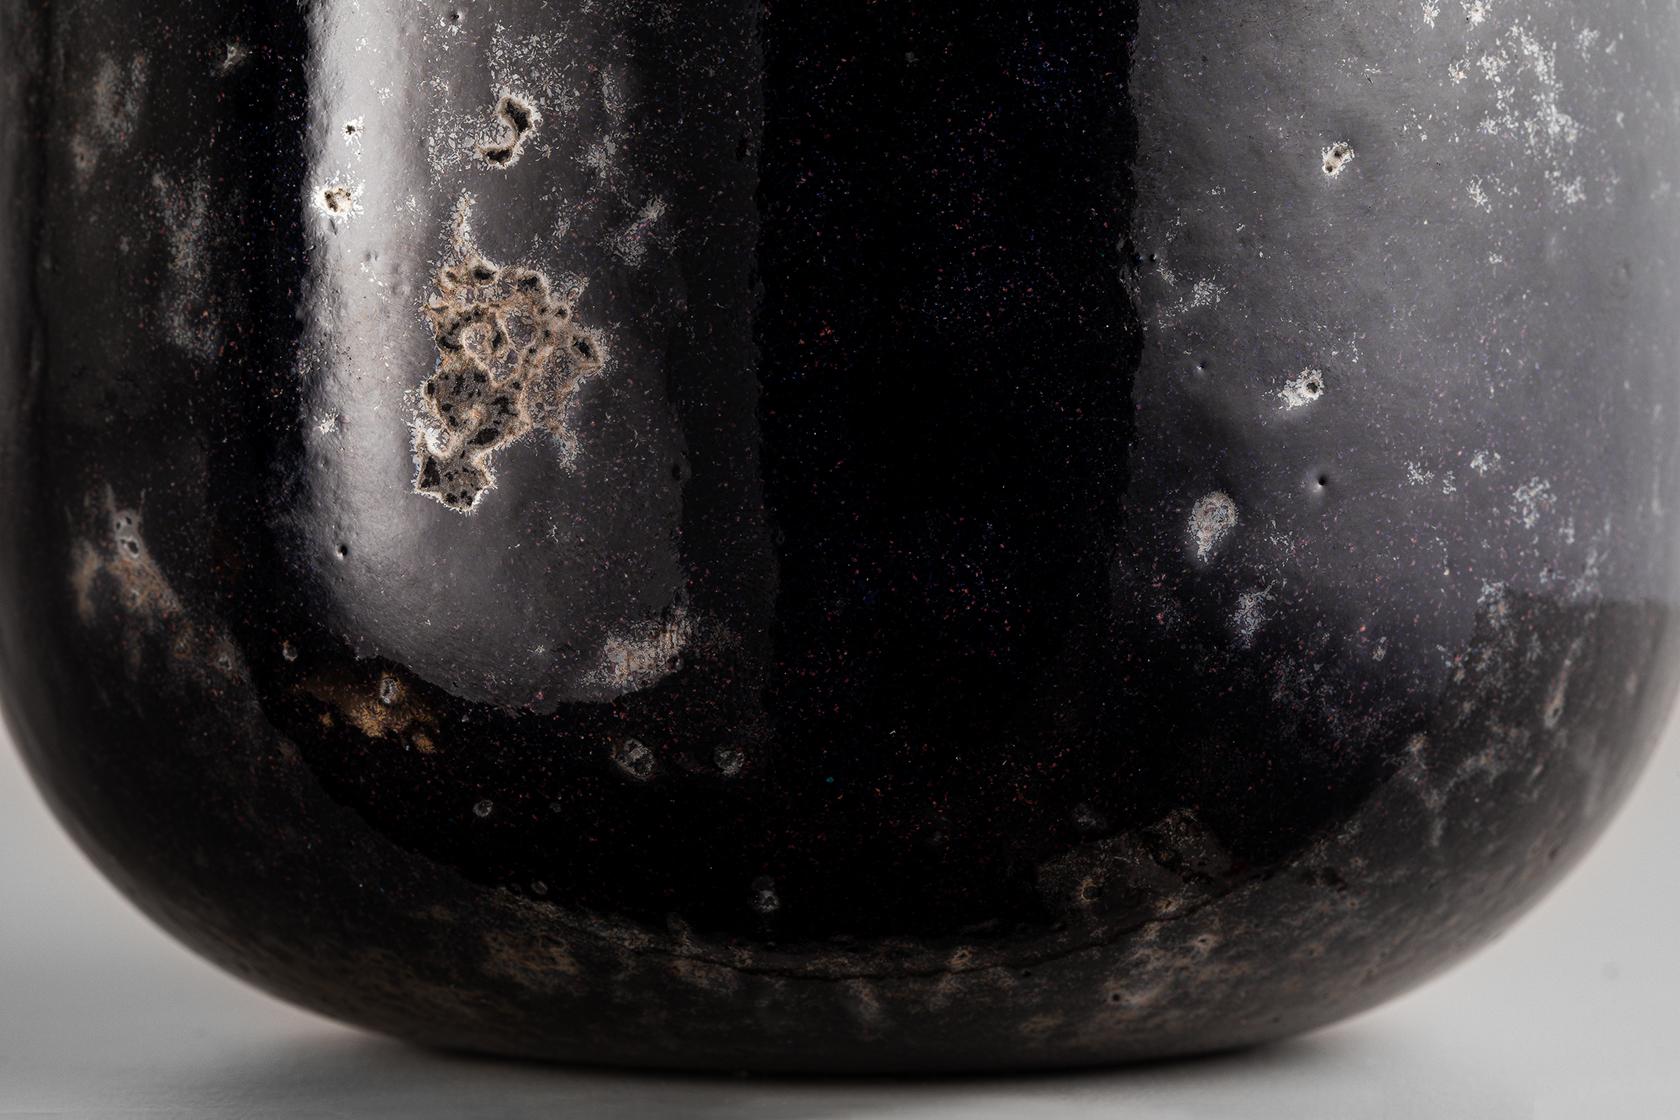 Collection'S von Kupfervasen mit emaillierter Innenseite und brünierter oder emaillierter Außenseite. Im Gegensatz zu den Novae-Vasen zeichnen sich die Mercurio-Vasen durch ein raueres, unregelmäßigeres Aussehen aus. Die Feueremaillierung auf Kupfer